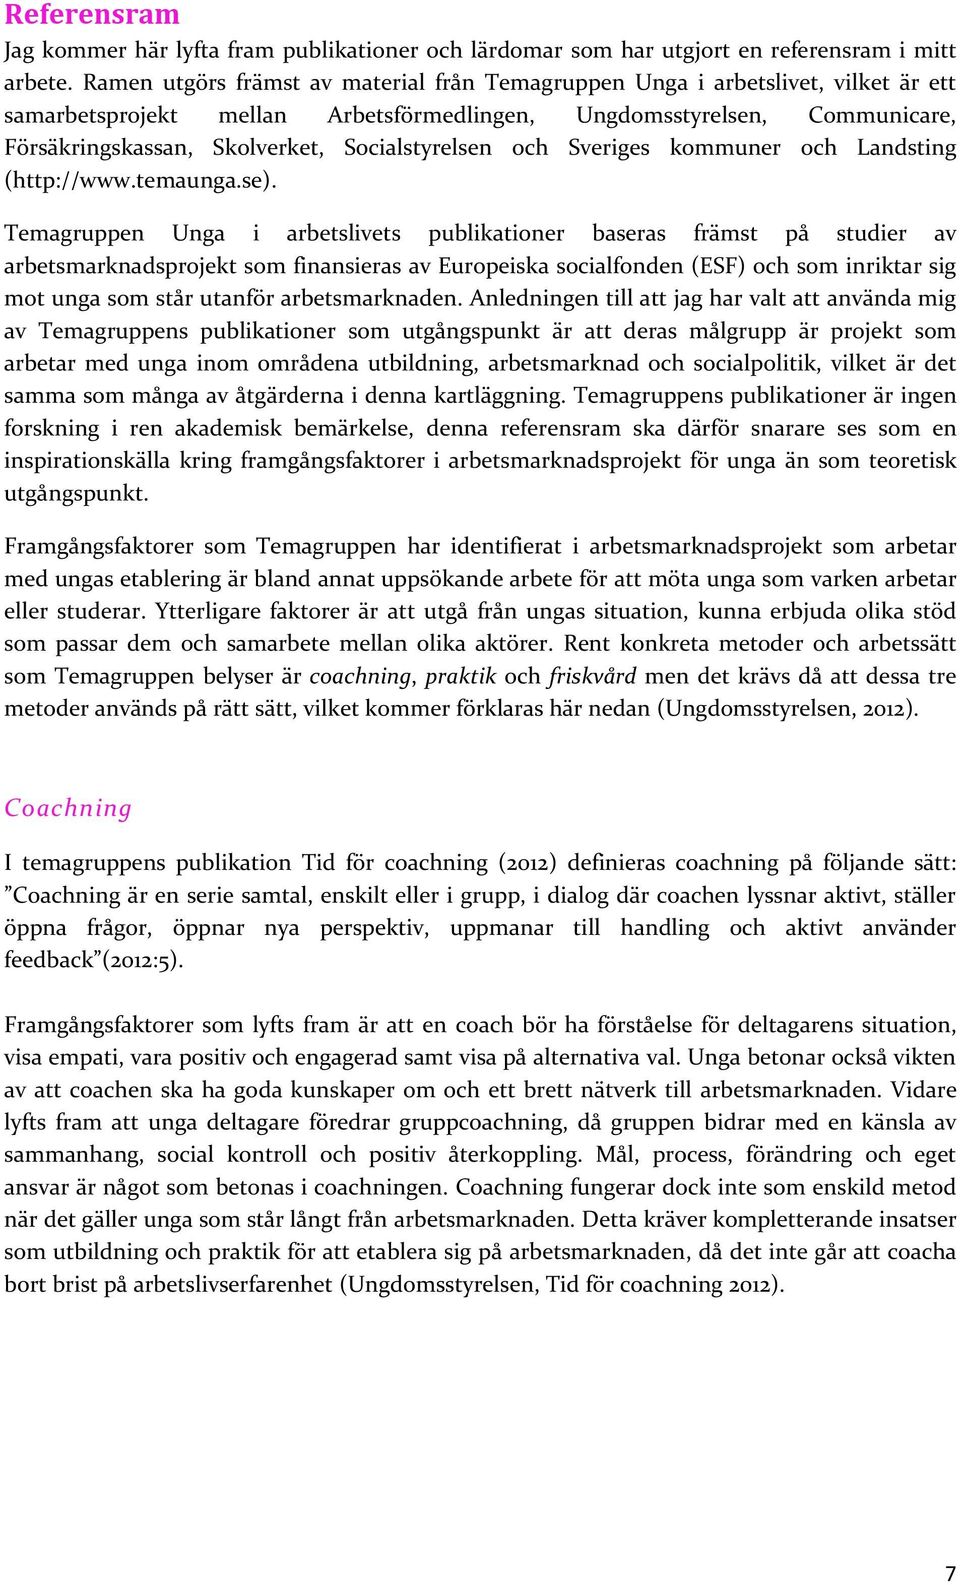 Socialstyrelsen och Sveriges kommuner och Landsting (http://www.temaunga.se).